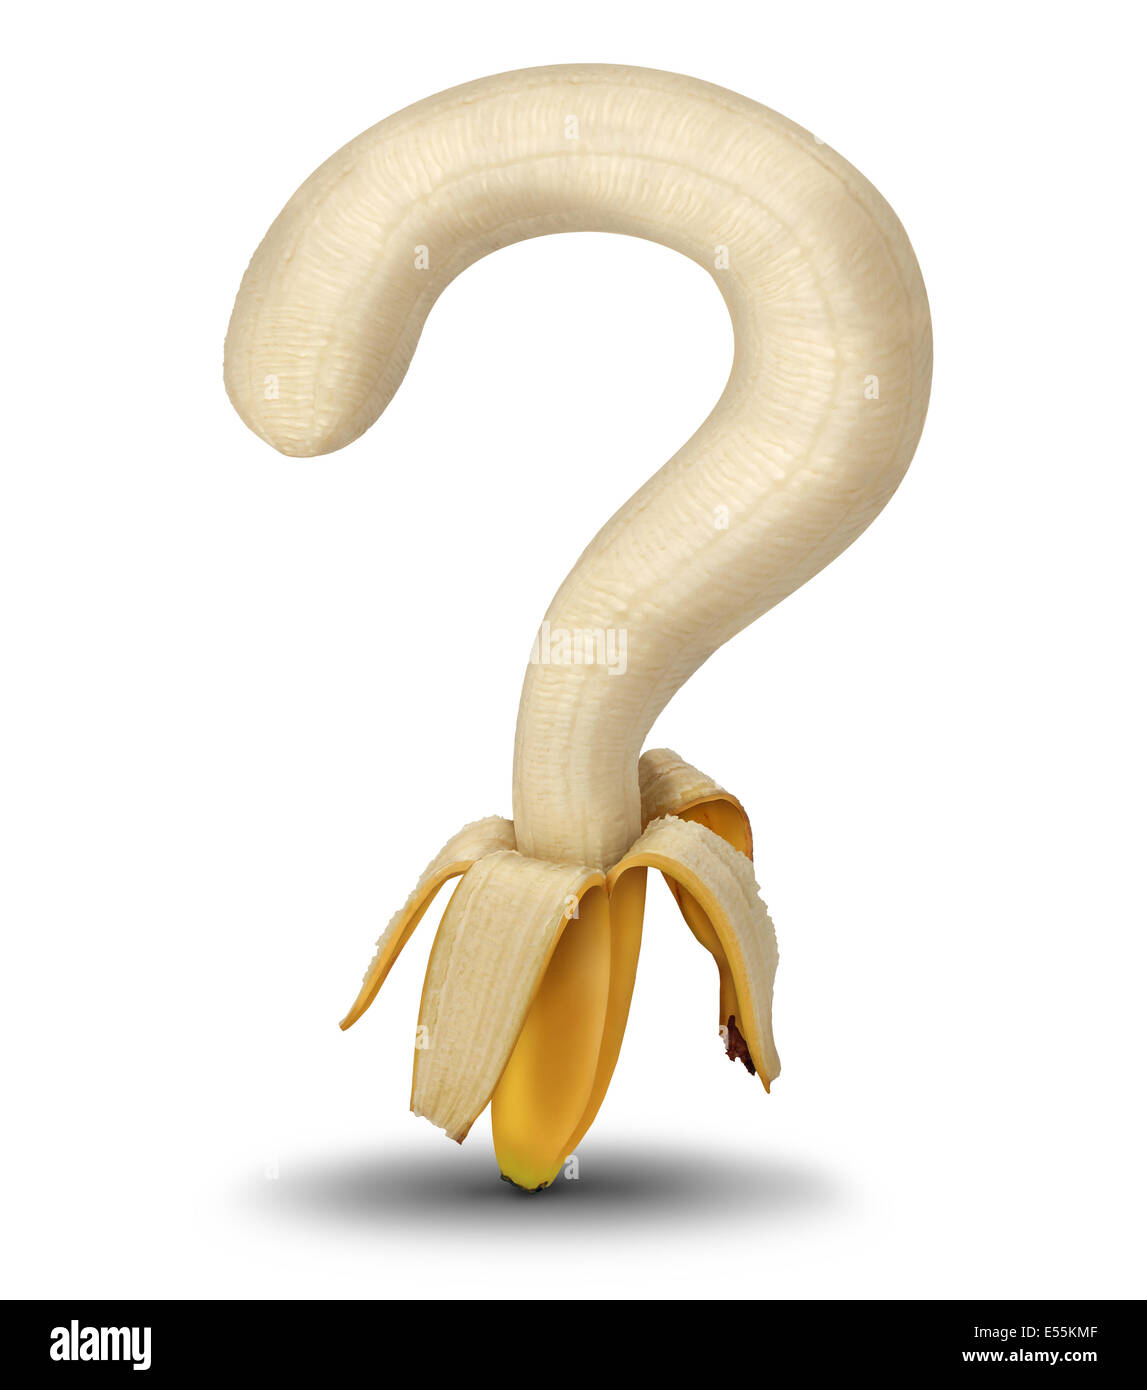 Les questions de nutrition et de choisir des options pour la nourriture à l'épicerie ou au marché avec aan ouvrir en forme de banane pelées comme un point d'interrogation comme un symbole d'orientation sur l'alimentation et les habitudes alimentaires sur un fond blanc. Banque D'Images